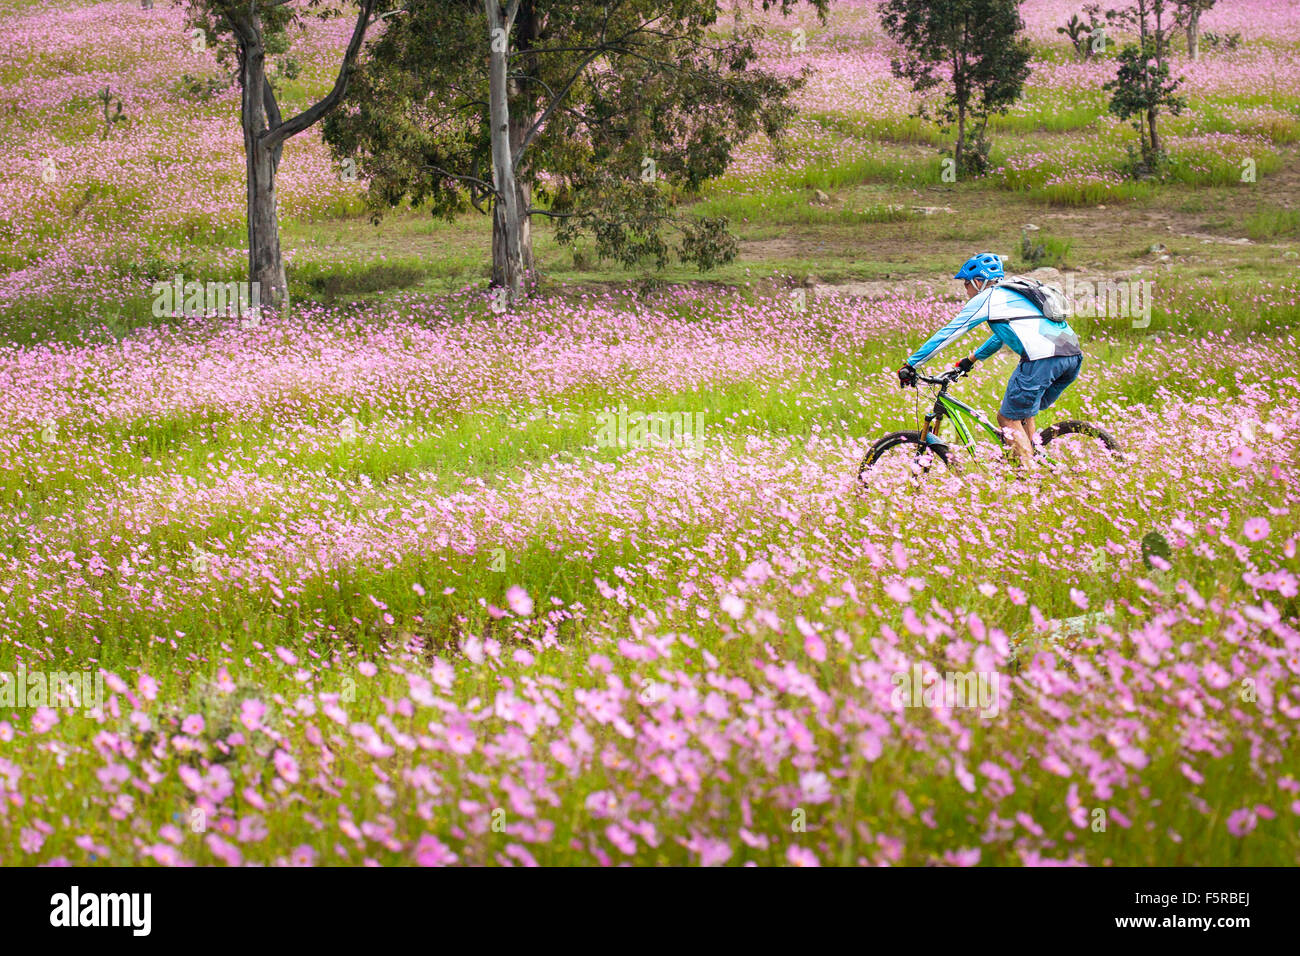 Mountainbiker reitet durch wilde Kosmos Blumenwiesen in der Nähe von Morelia, Michoacan, Mexiko. Stockfoto